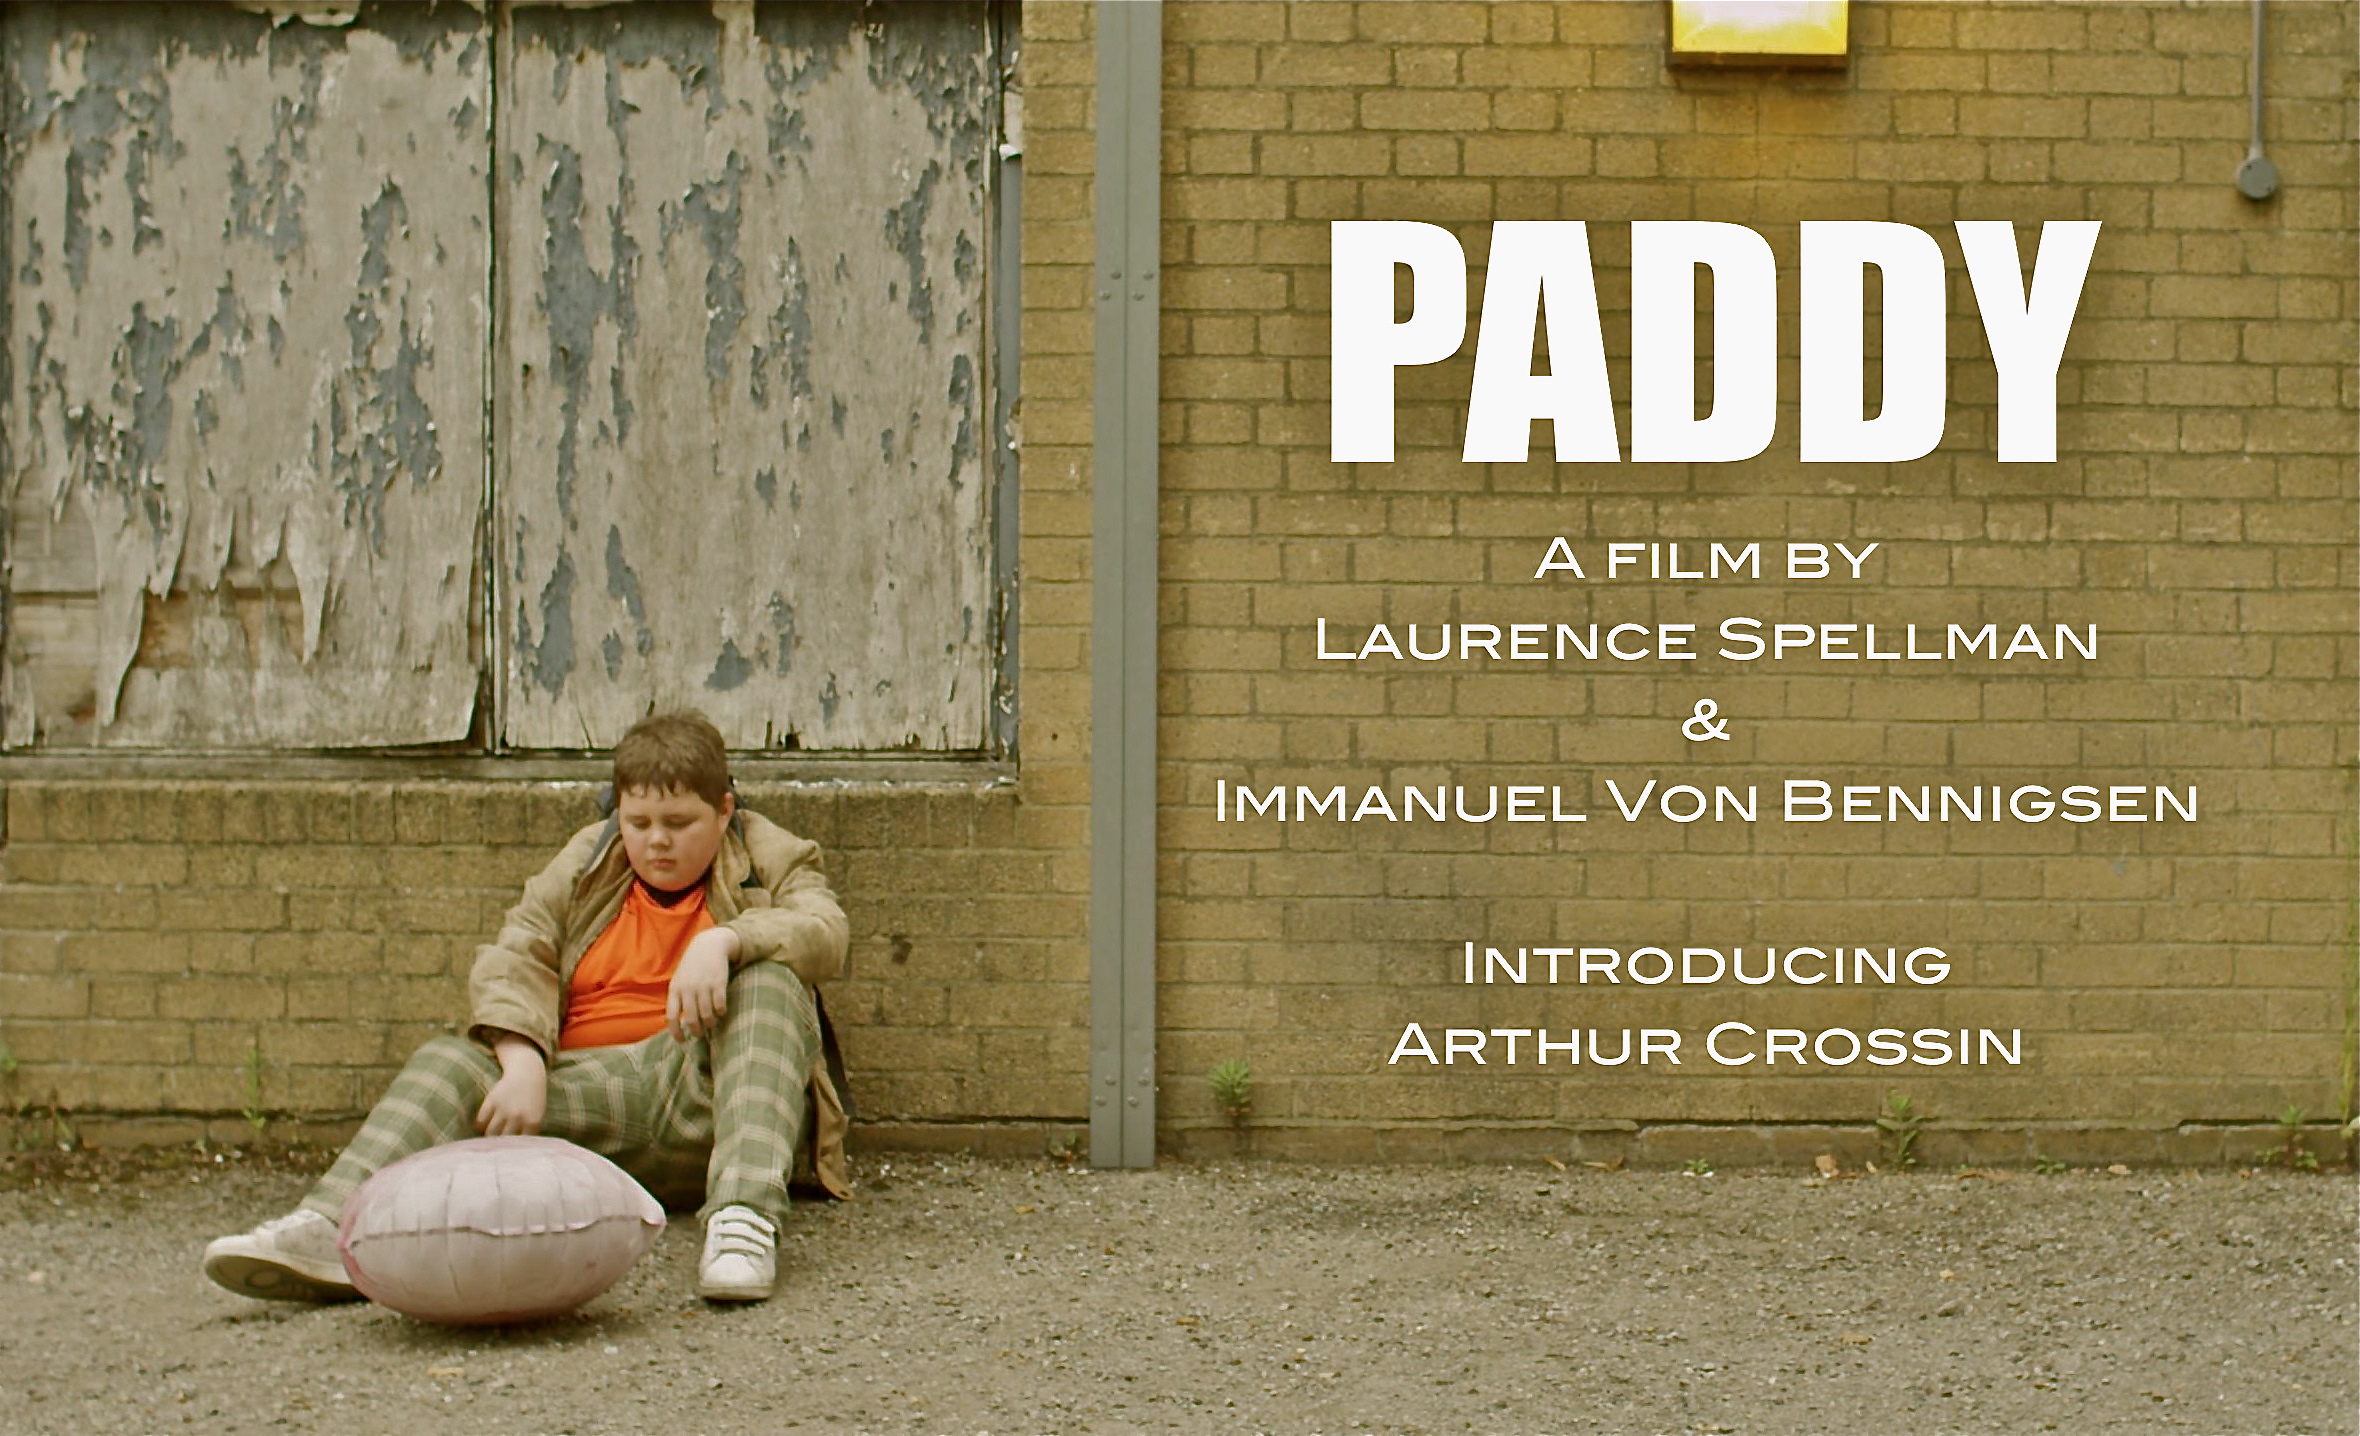 PADDY a film by Laurence Spellman & Immanuel Von Bennigsen